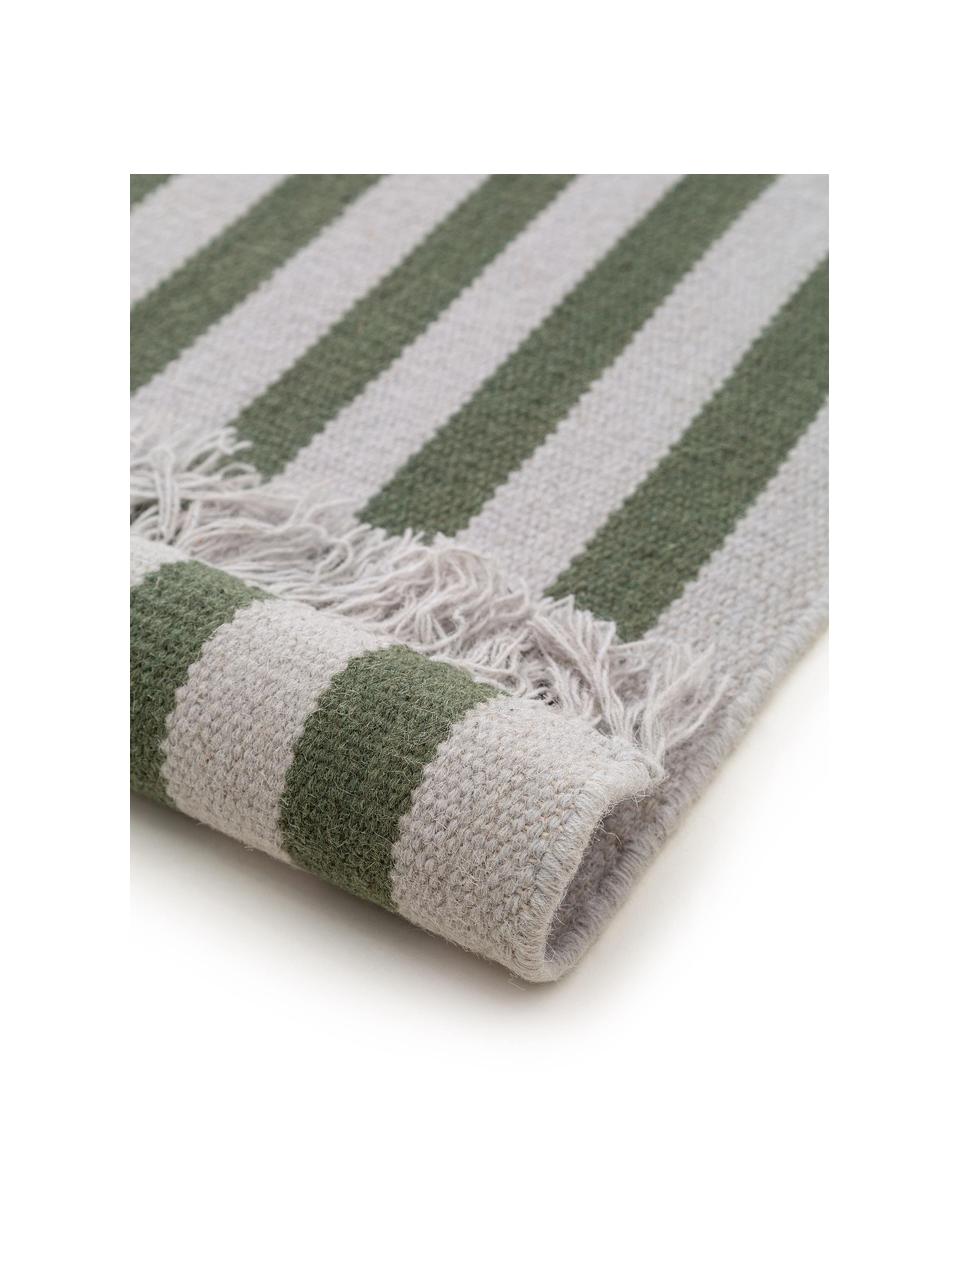 Ręcznie tkany chodnik z wełny z frędzlami Gitta, 90% wełna, 10% bawełna

Włókna dywanów wełnianych mogą nieznacznie rozluźniać się w pierwszych tygodniach użytkowania, co ustępuje po pewnym czasie, Jasny szary, ciemny zielony, S 70 x D 200 cm